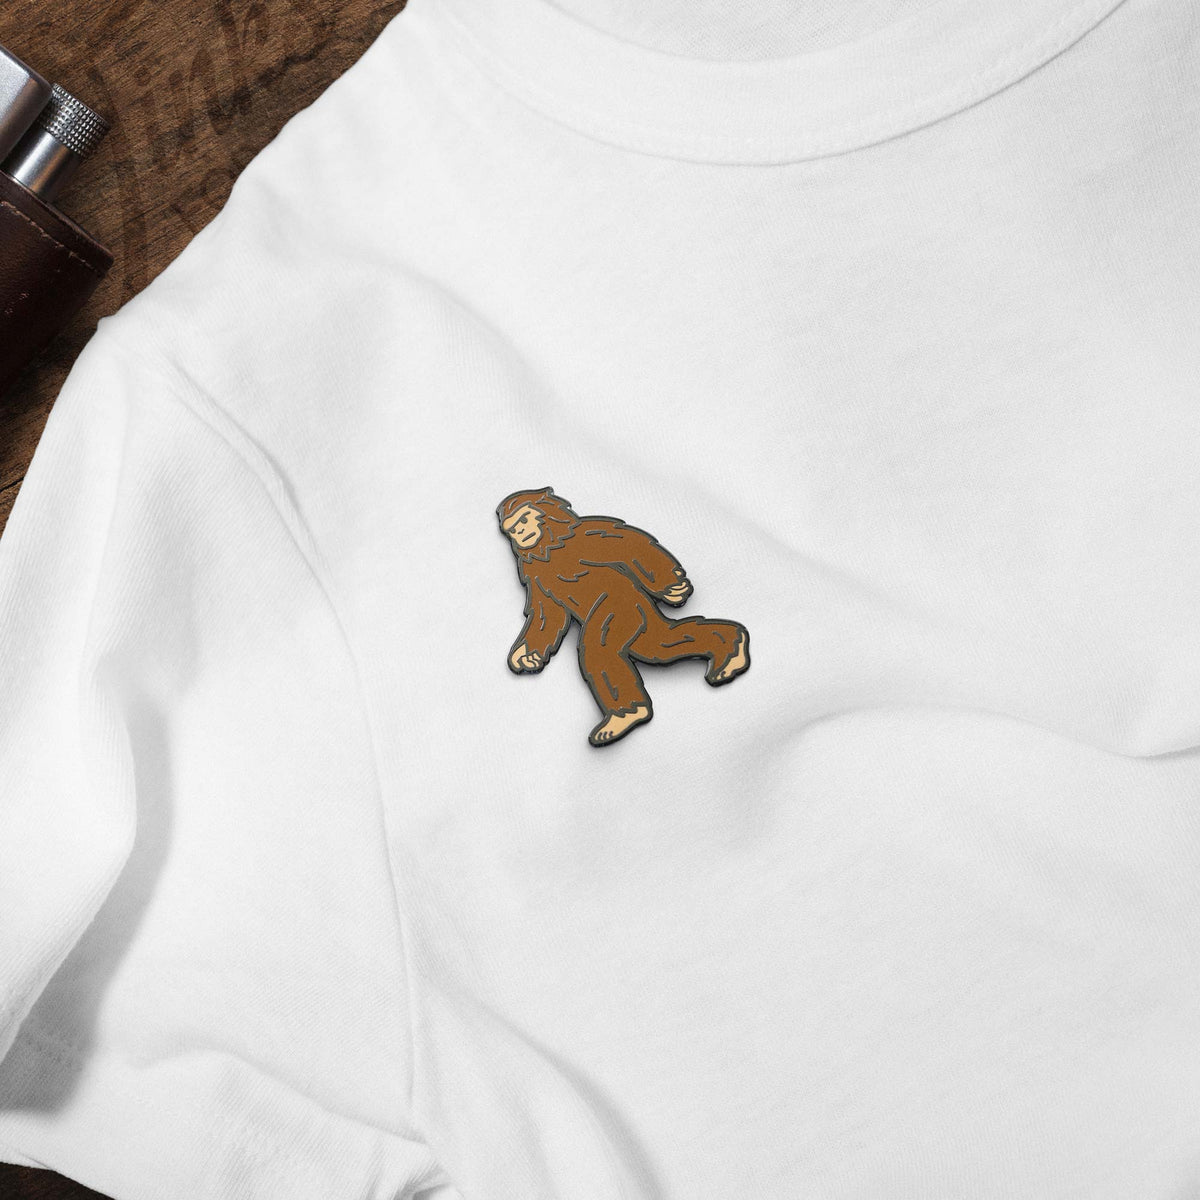 Bigfoot Sasquatch hard enamel pin on white t-shirt